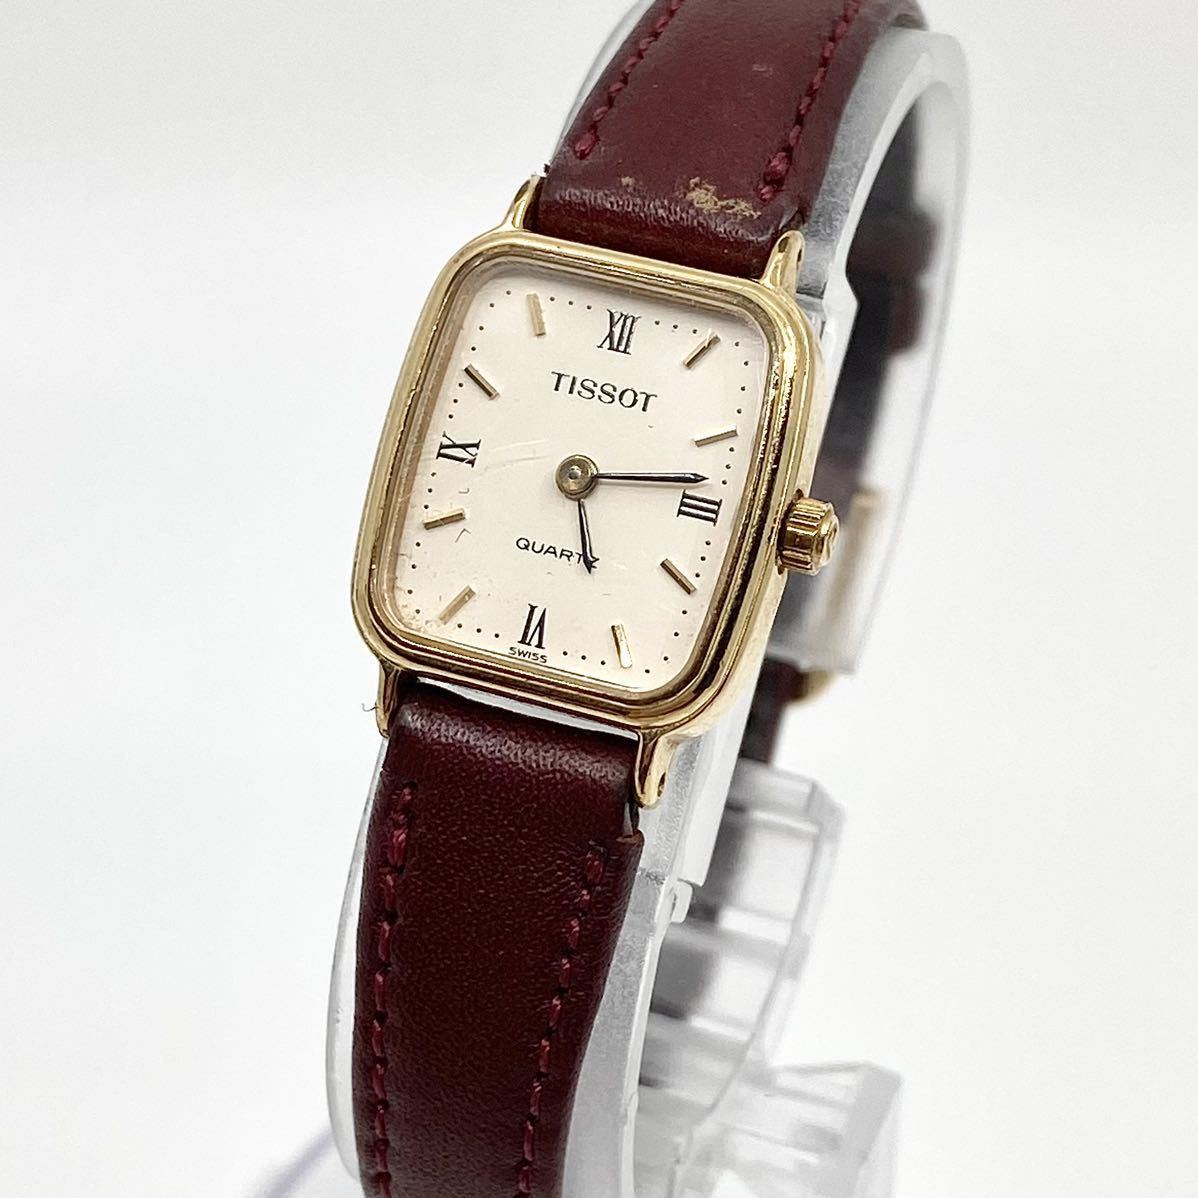 TISSOT 腕時計 クォーツ quartz 2針 Swiss スイス製 レザーベルト ホワイト ゴールド ブラウン 白 金 茶 maruman ティソ Y185の画像1